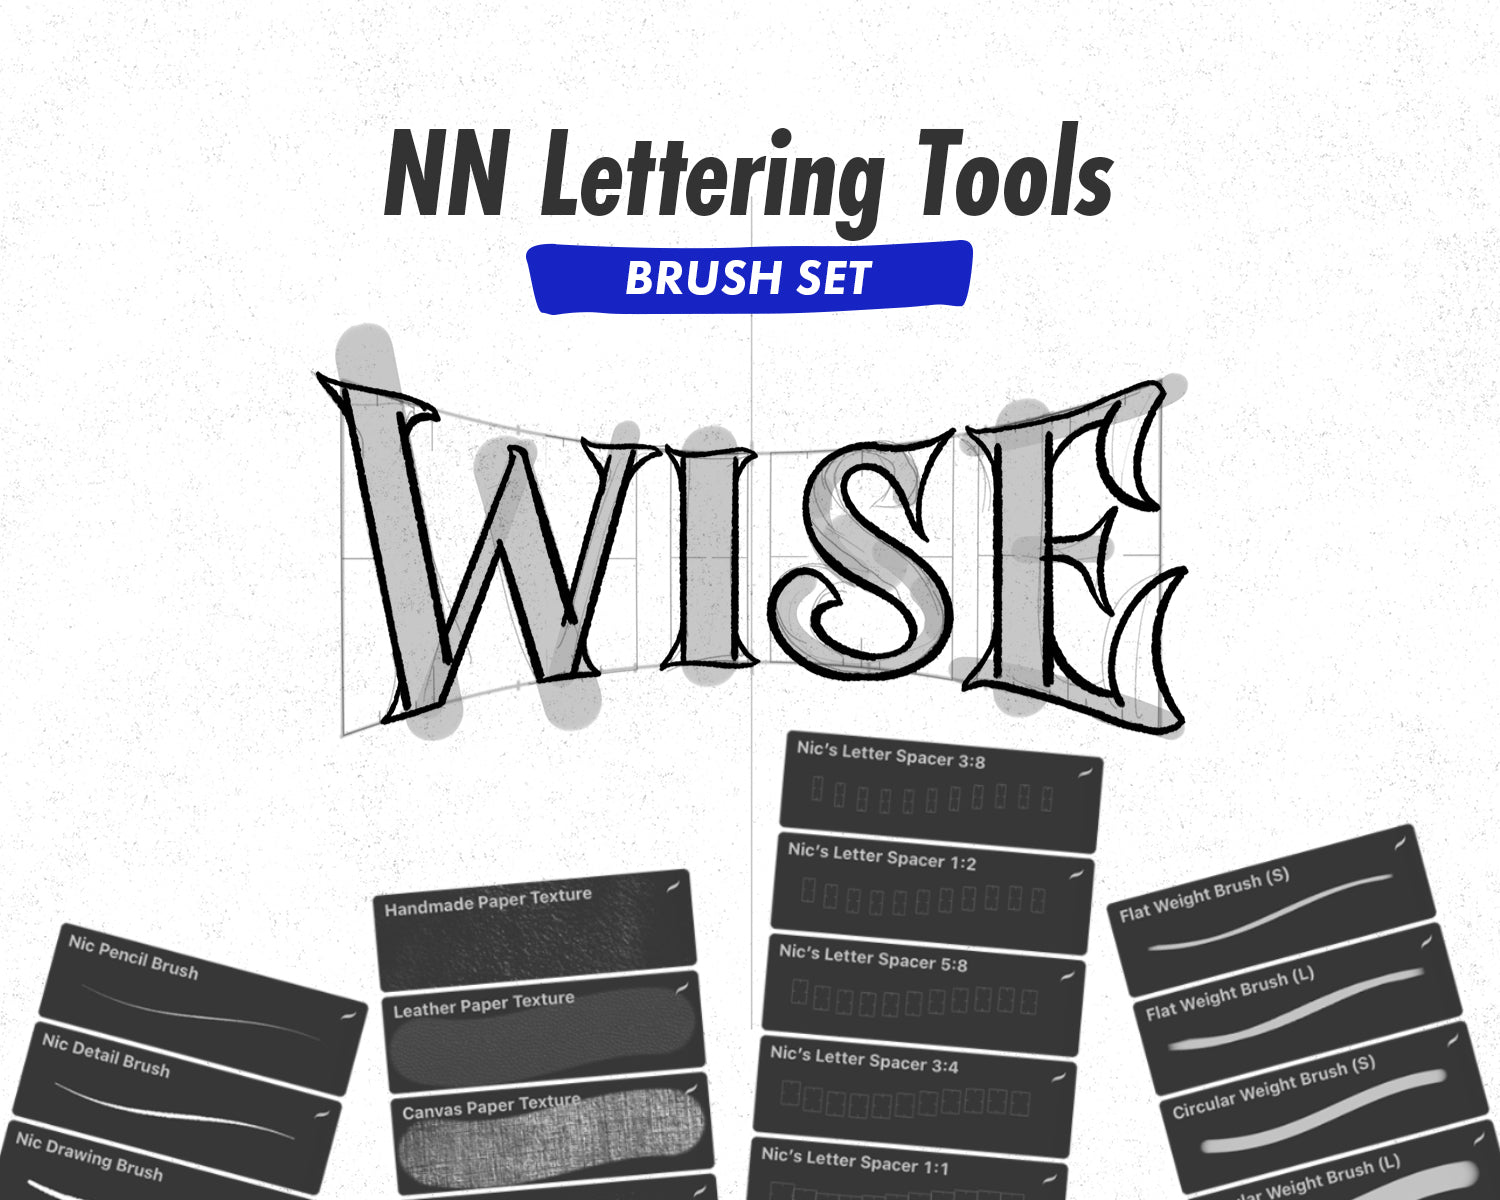 Part 3: NN Lettering Tools .brushset